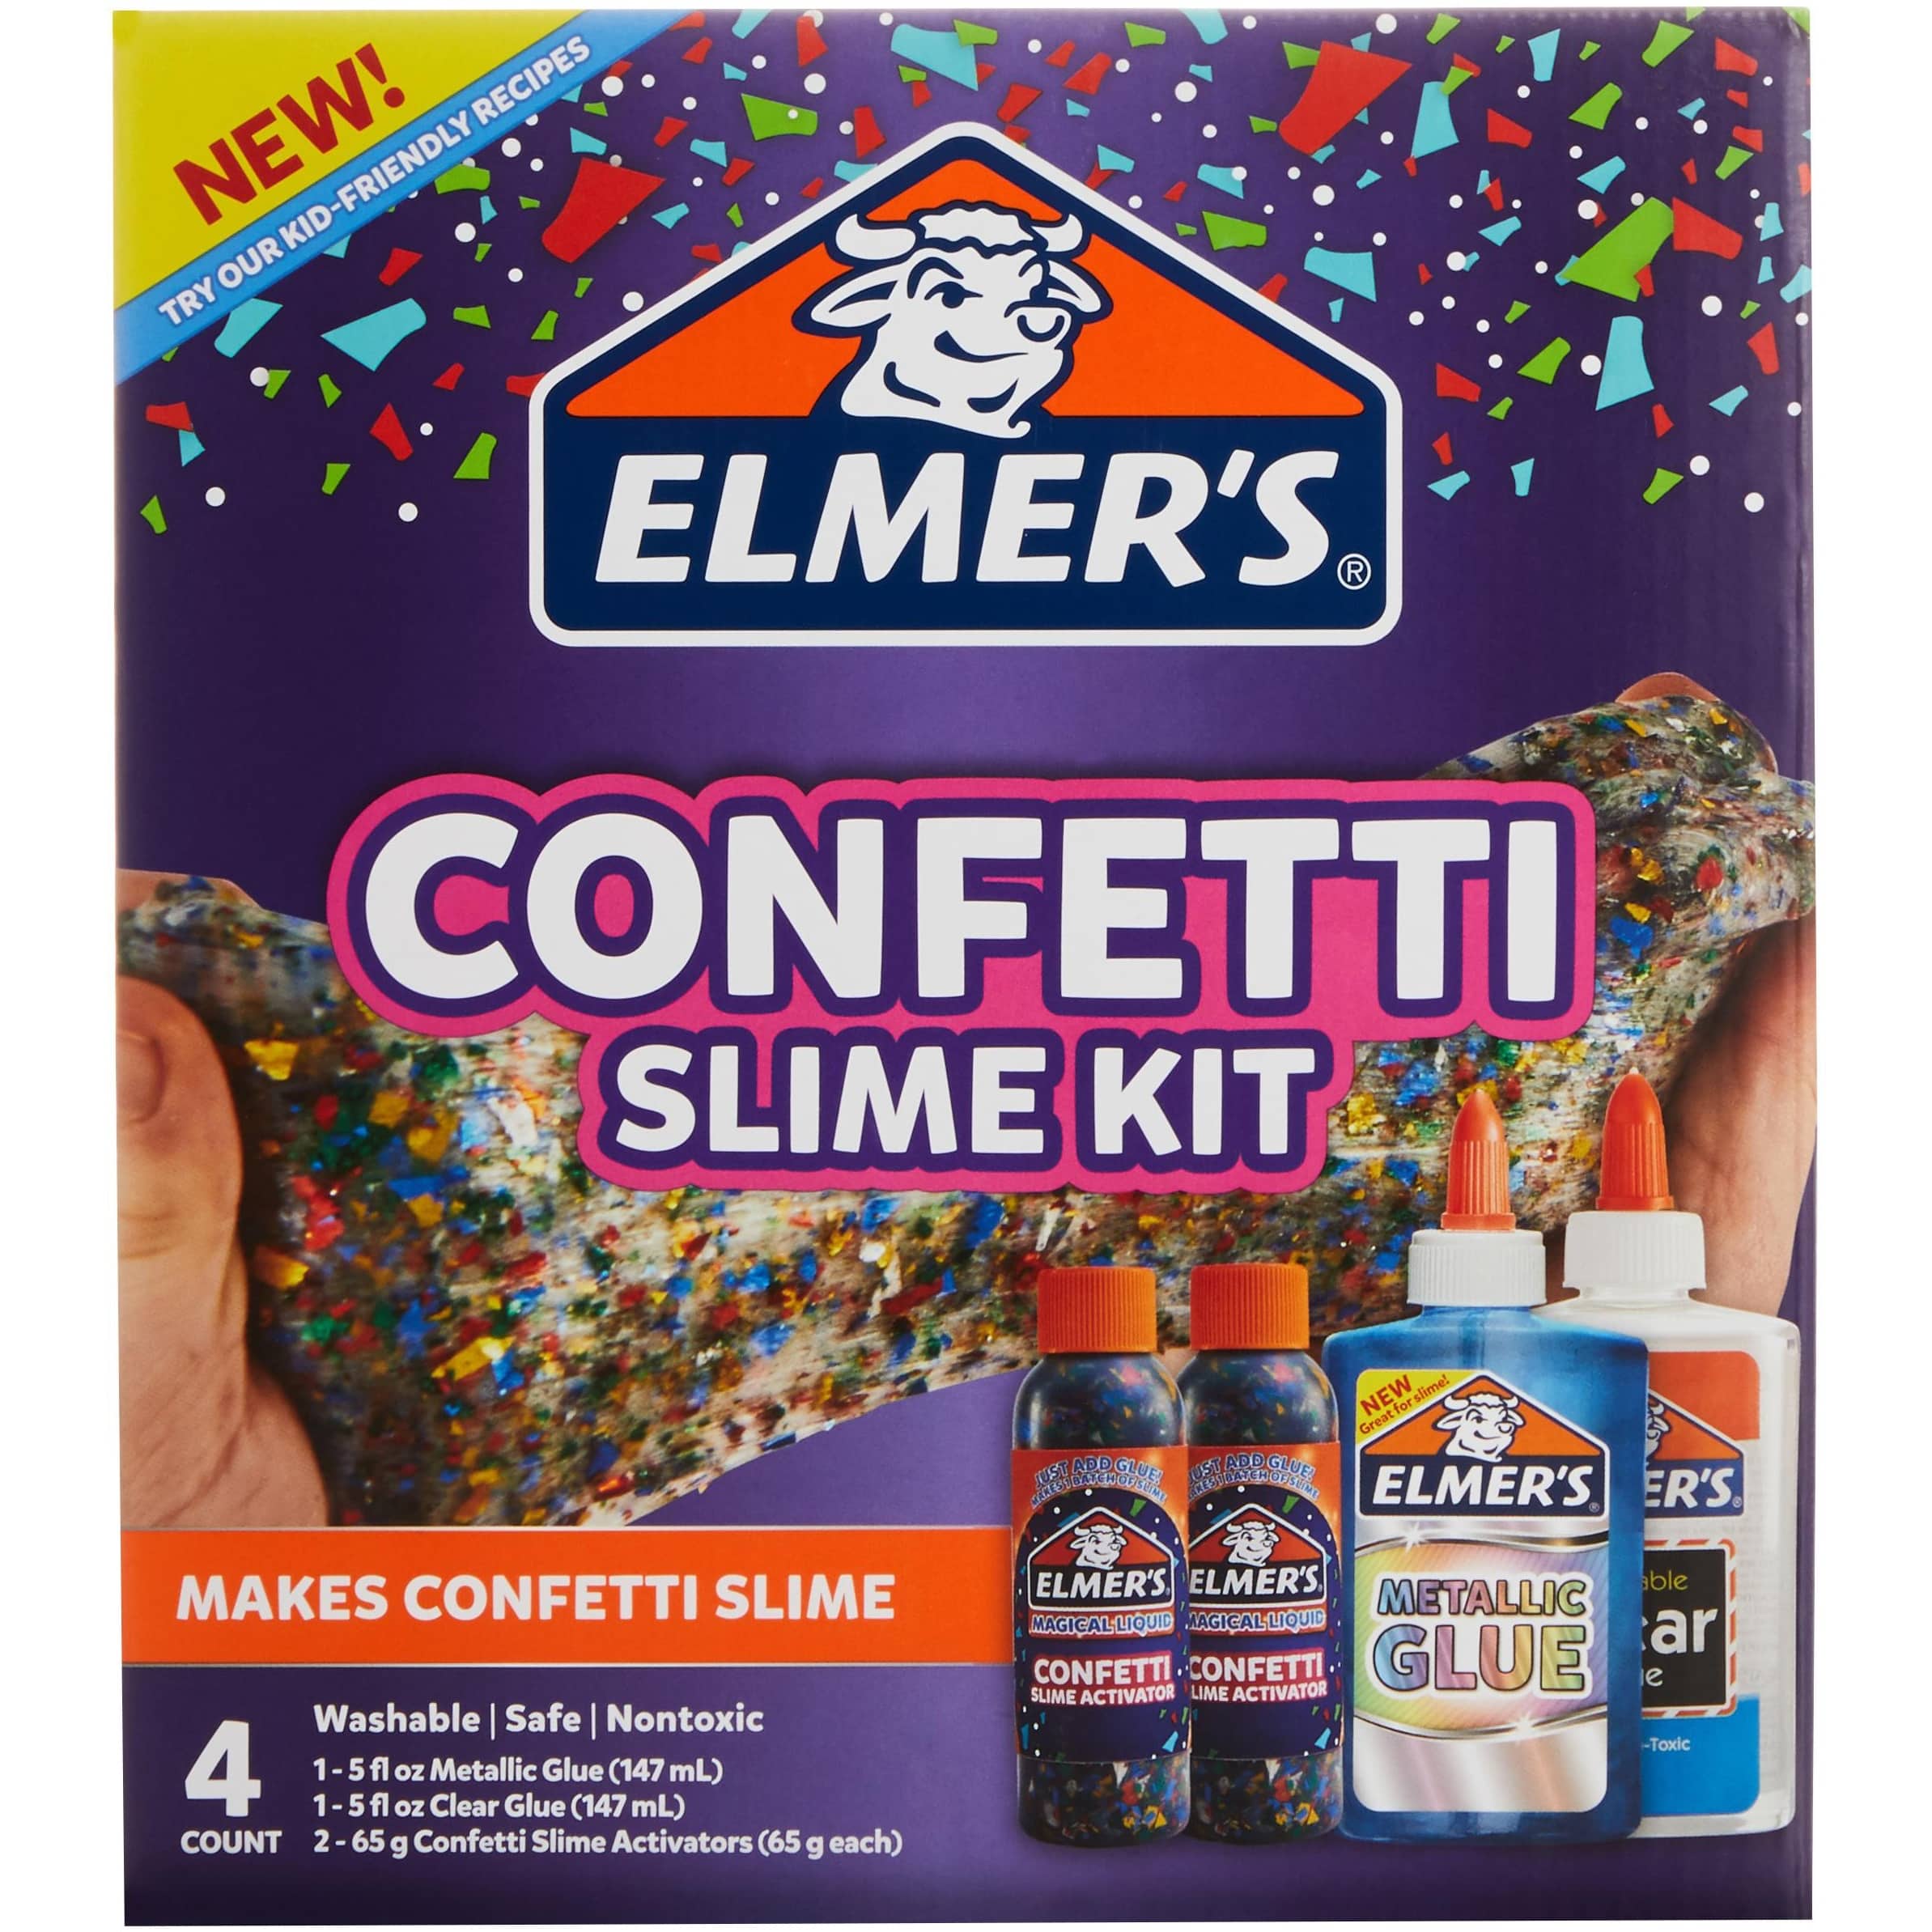 Elmer's Elmer'S Collection Slime Kit